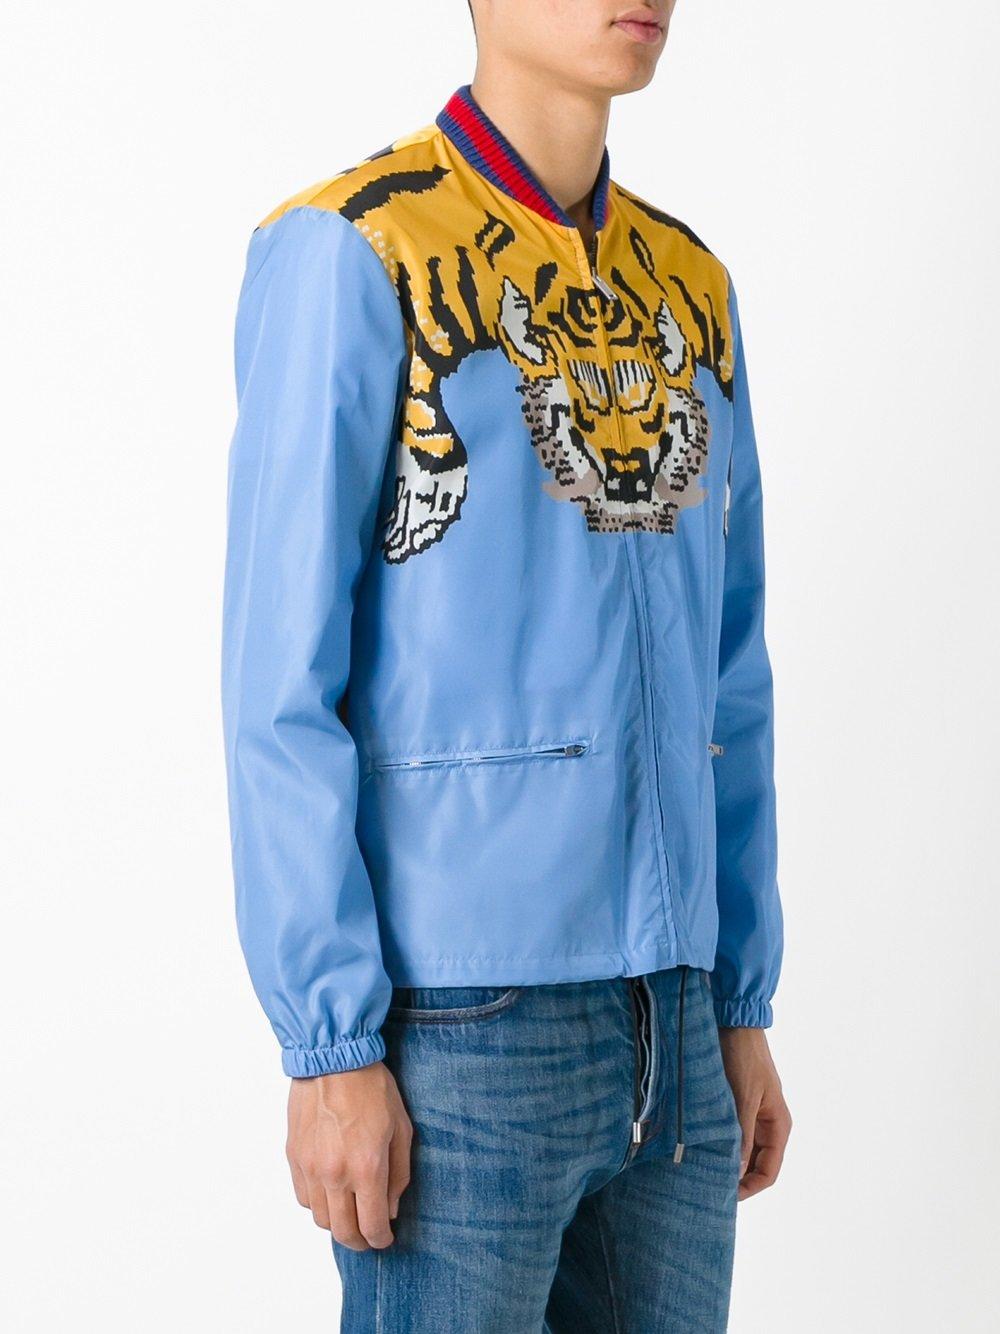 Tag et bad enorm Præstation Gucci Tiger Print Bomber Jacket in Blue for Men | Lyst